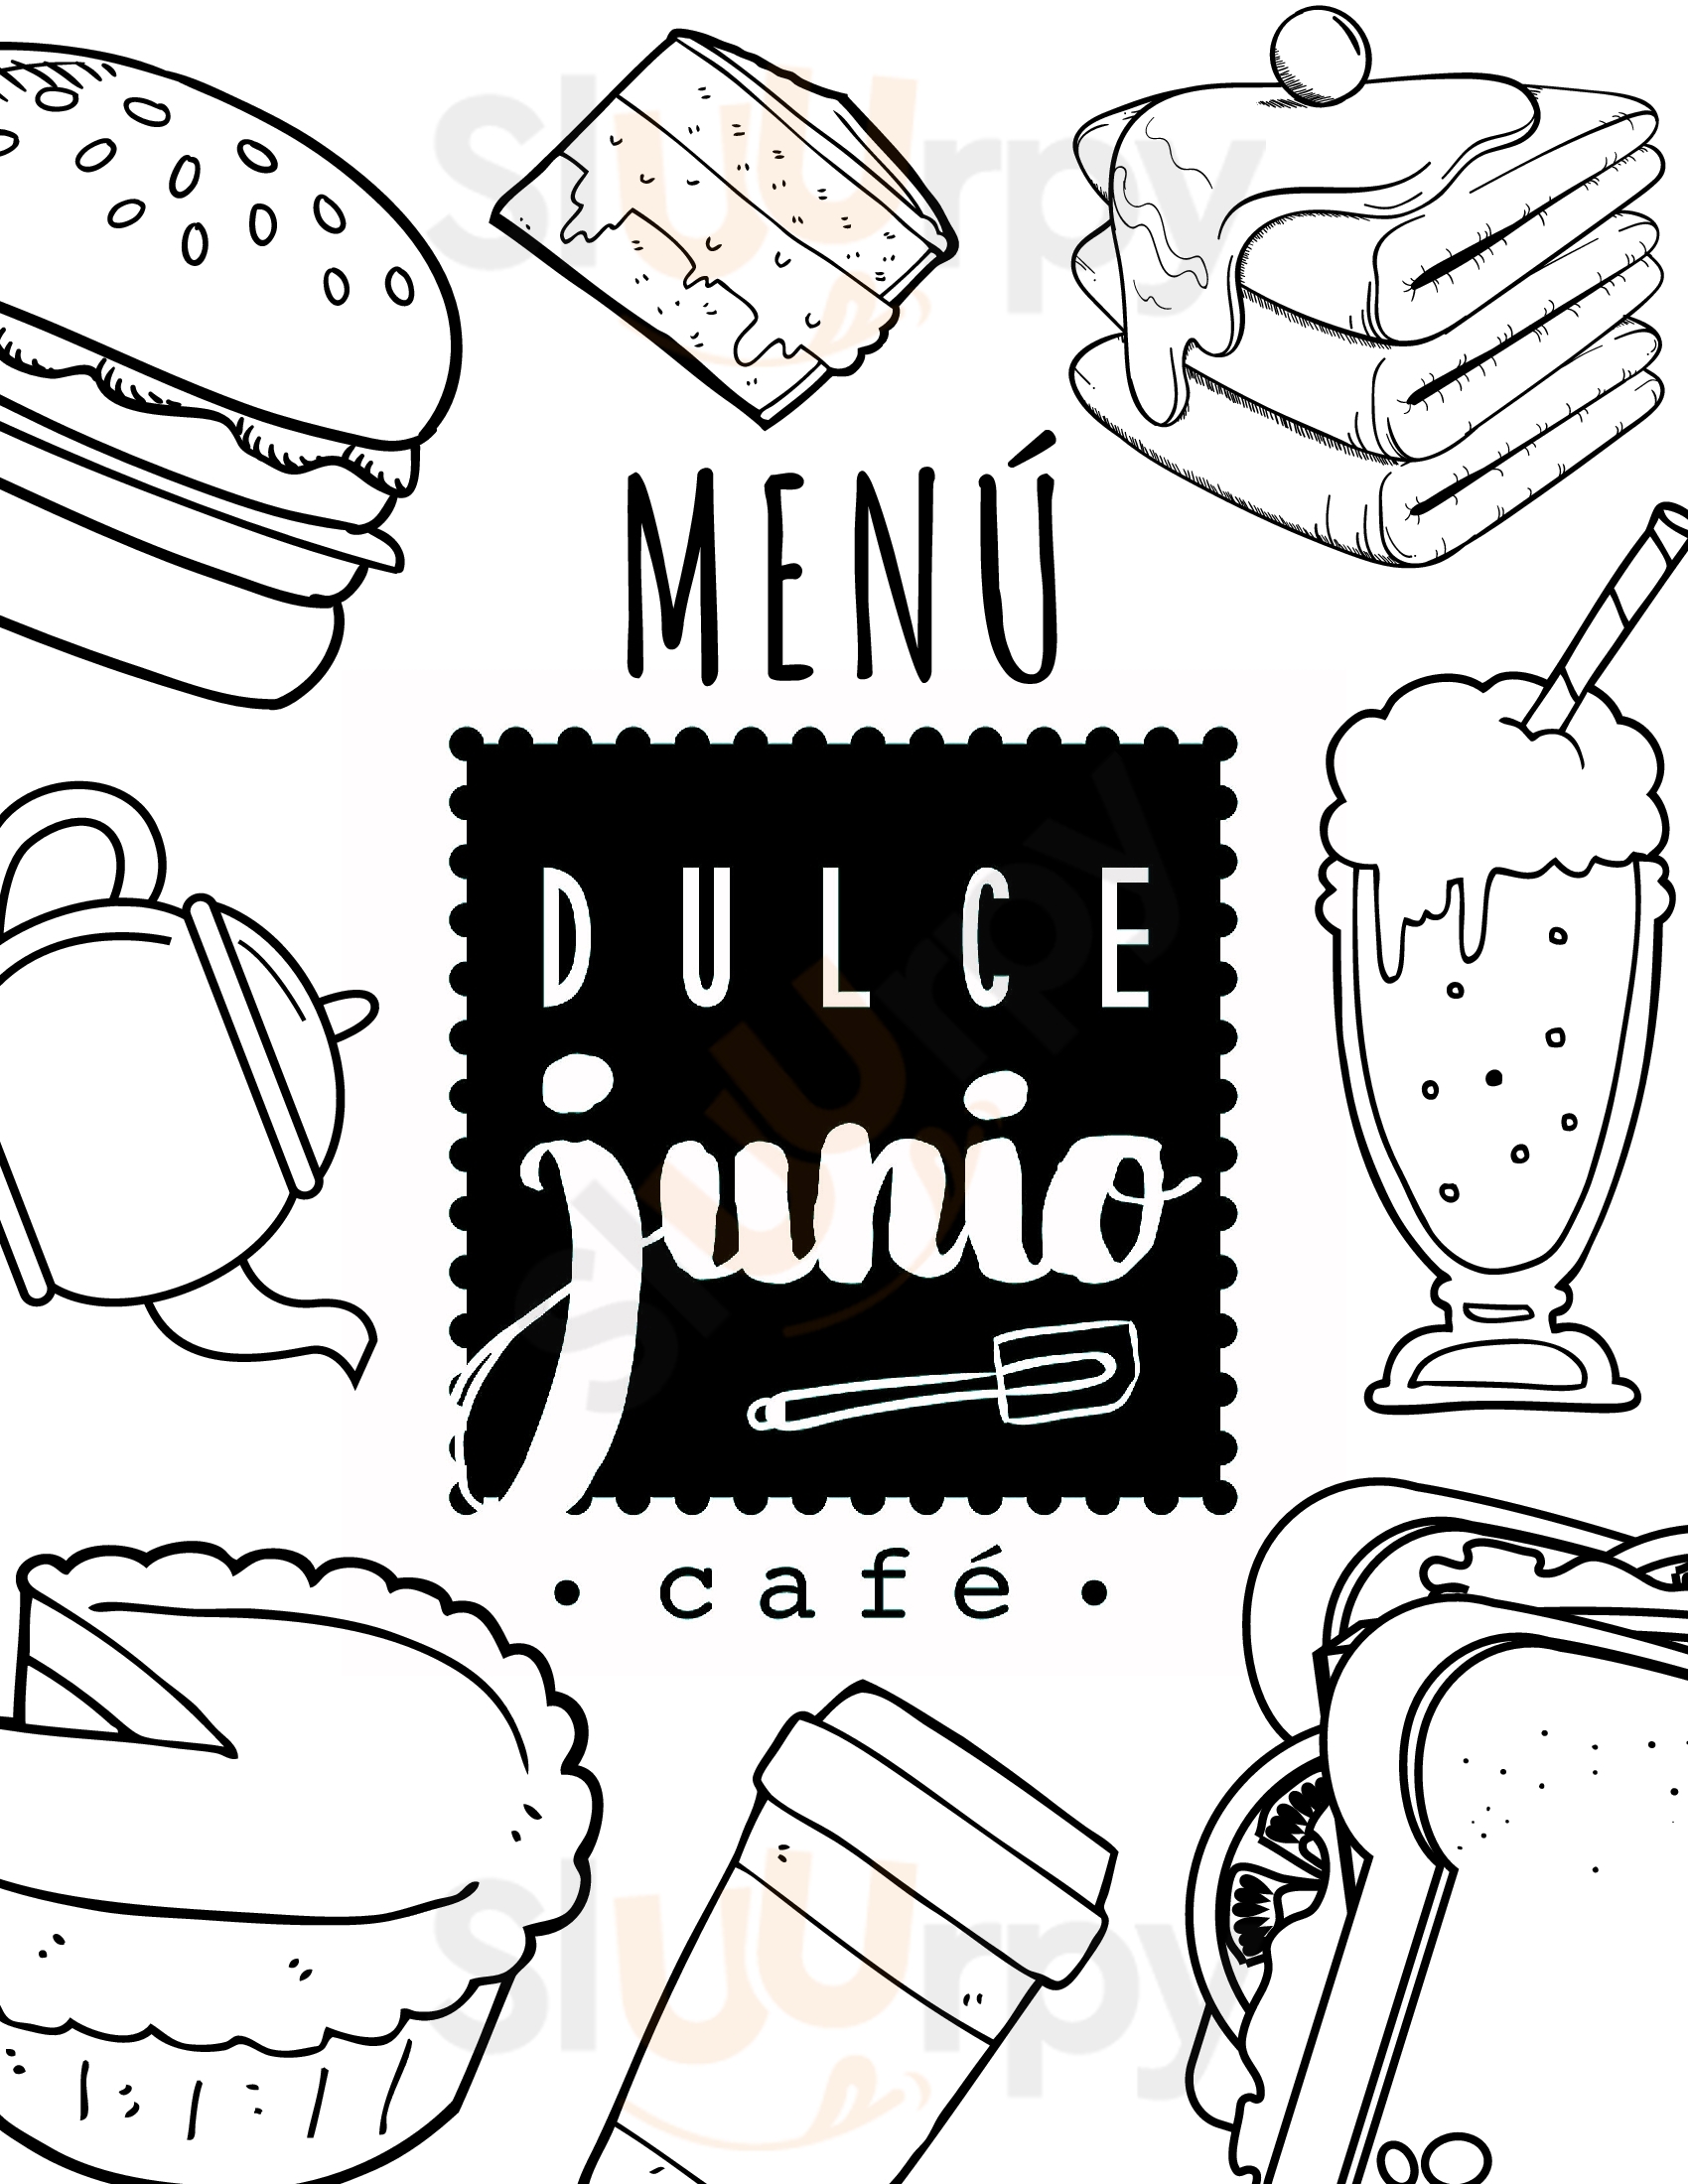 Dulce Junio Cafe San José Menu - 1